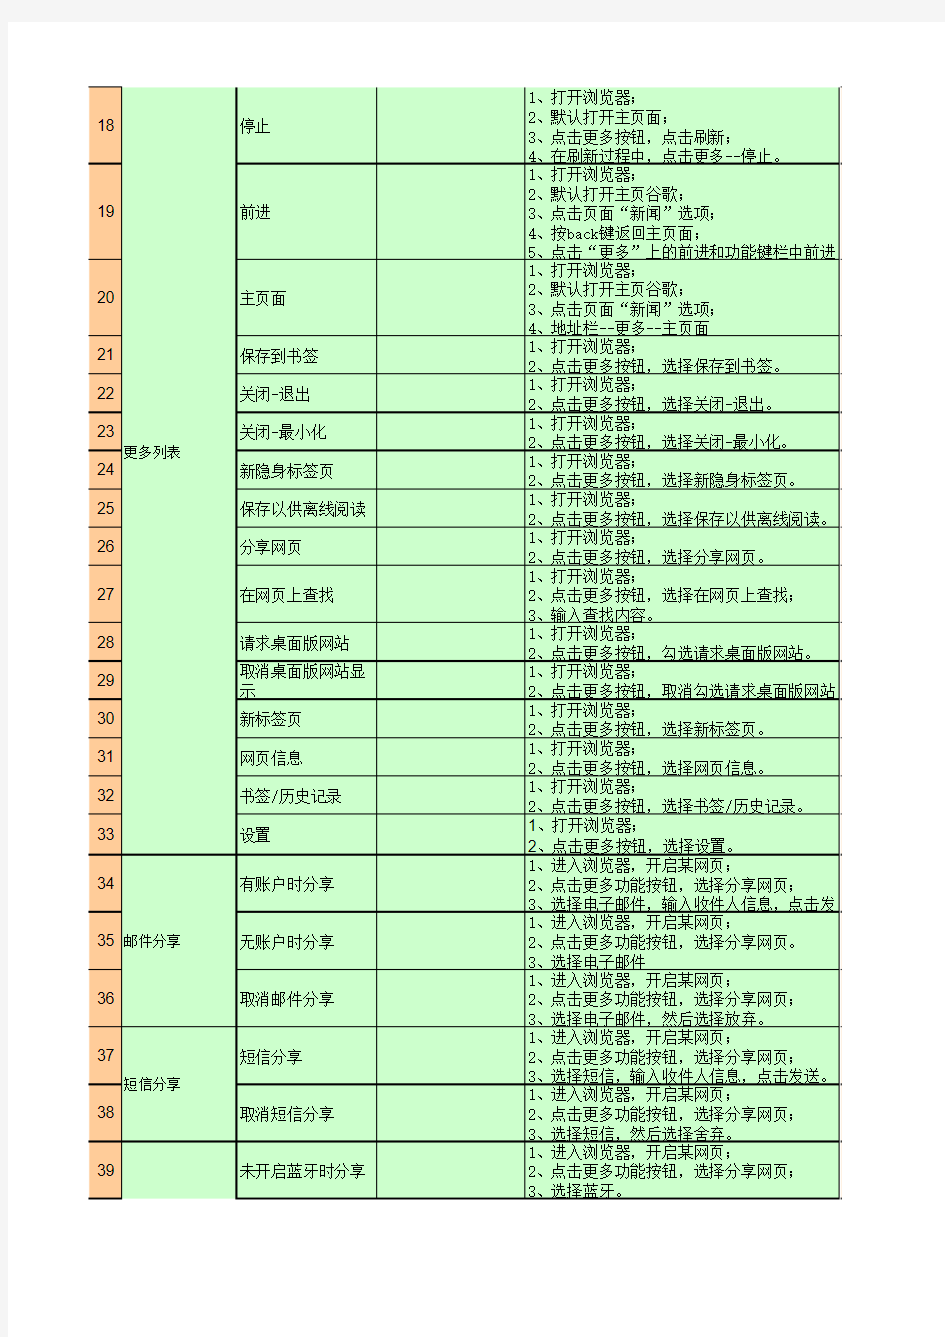 【B】-浏览器-功能测试用例-20141227